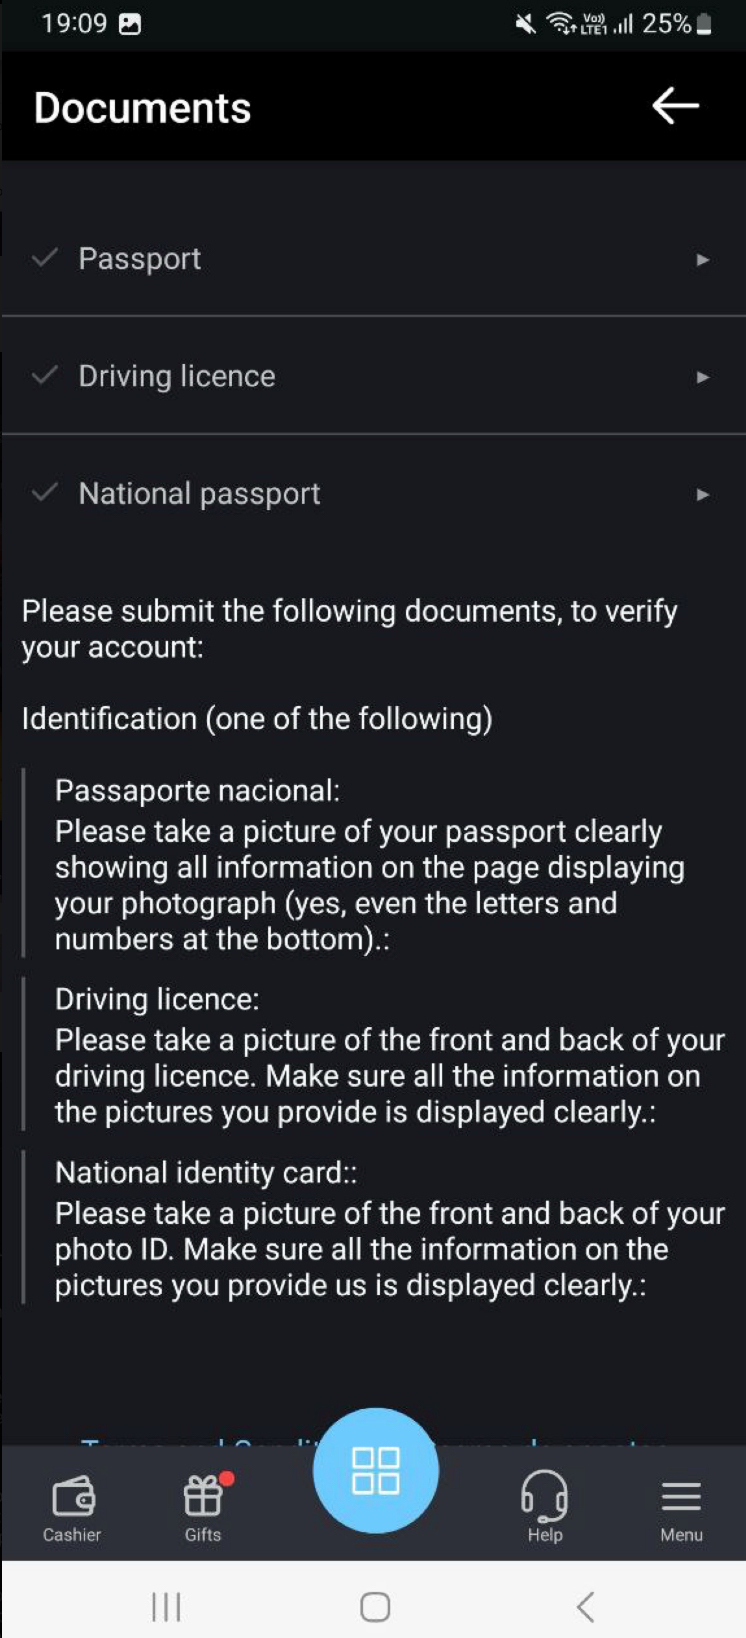 Requisitos para verificação de identidade.